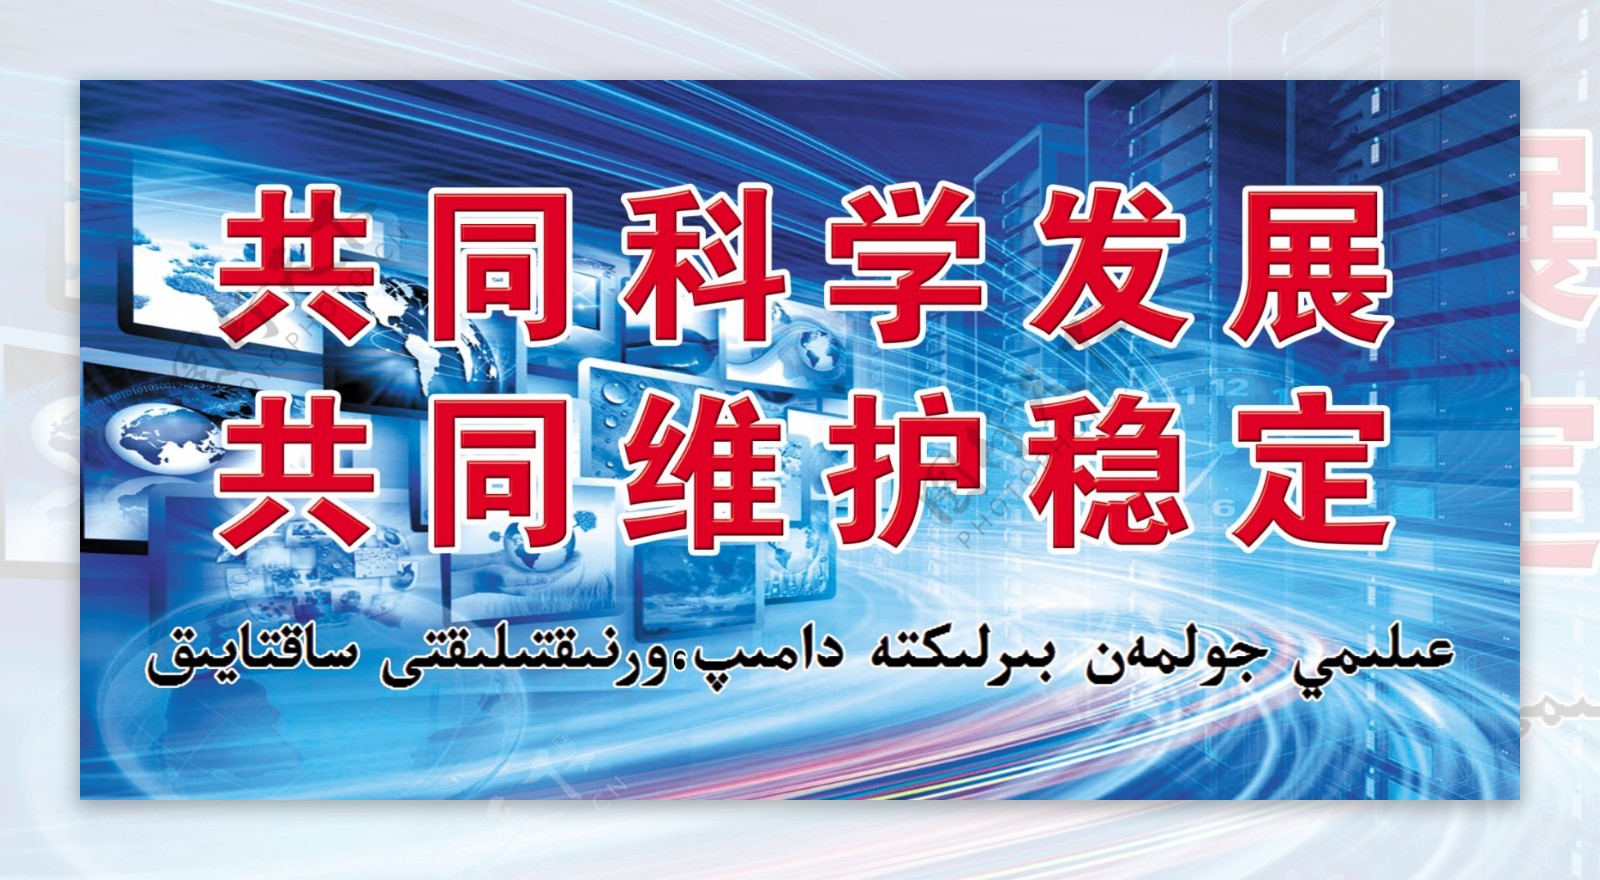 民族团结宣传语哈语